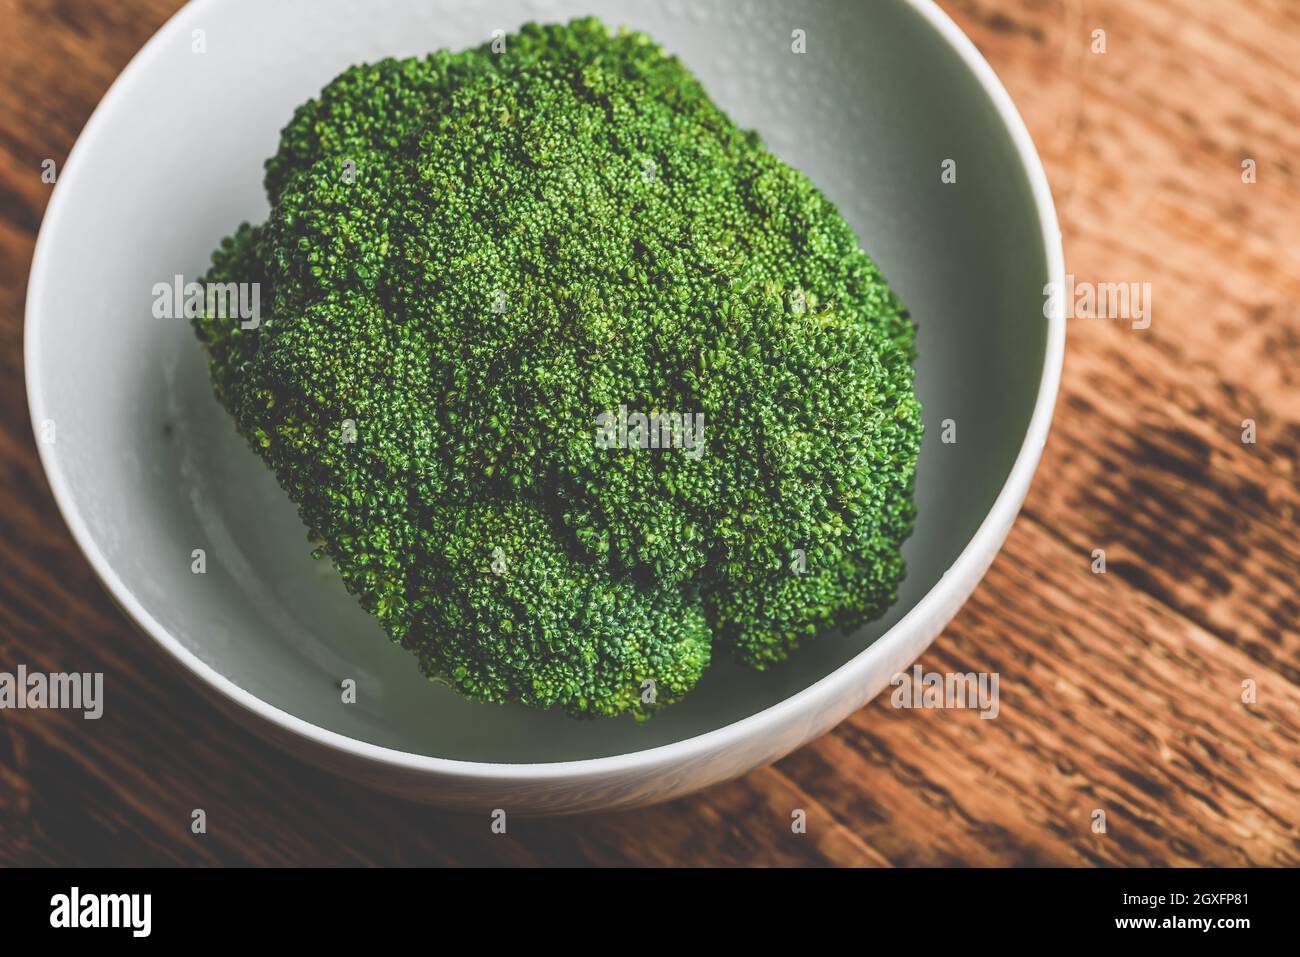 Le brocoli frais dans un bol blanc prêt à être préparé pour une recette Banque D'Images